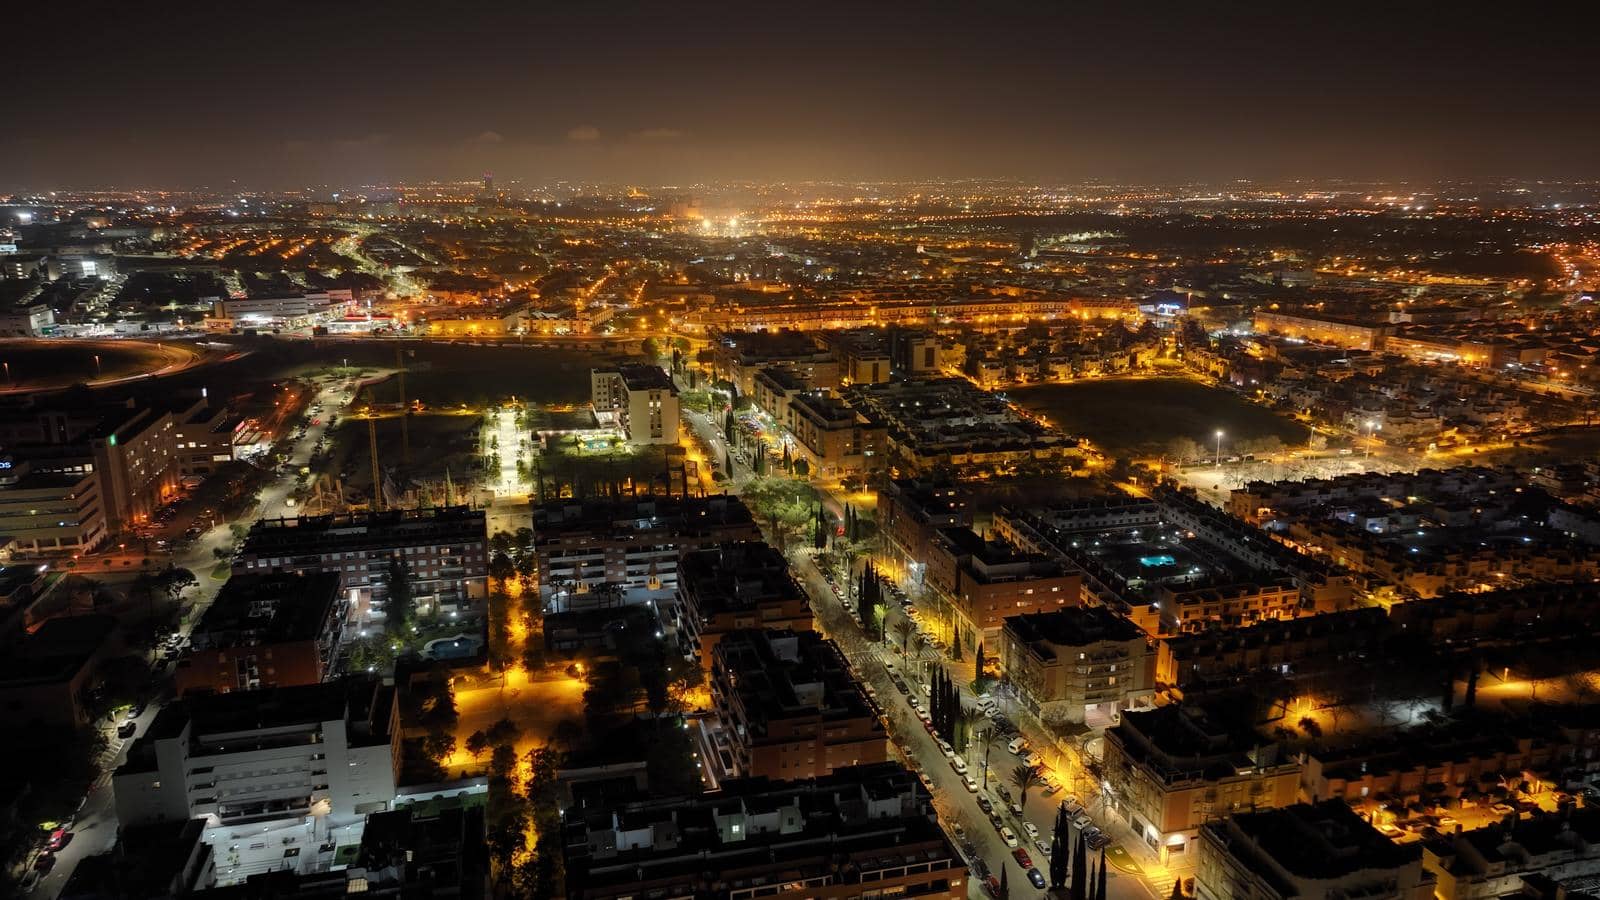 imagen aérea con dron nocturna